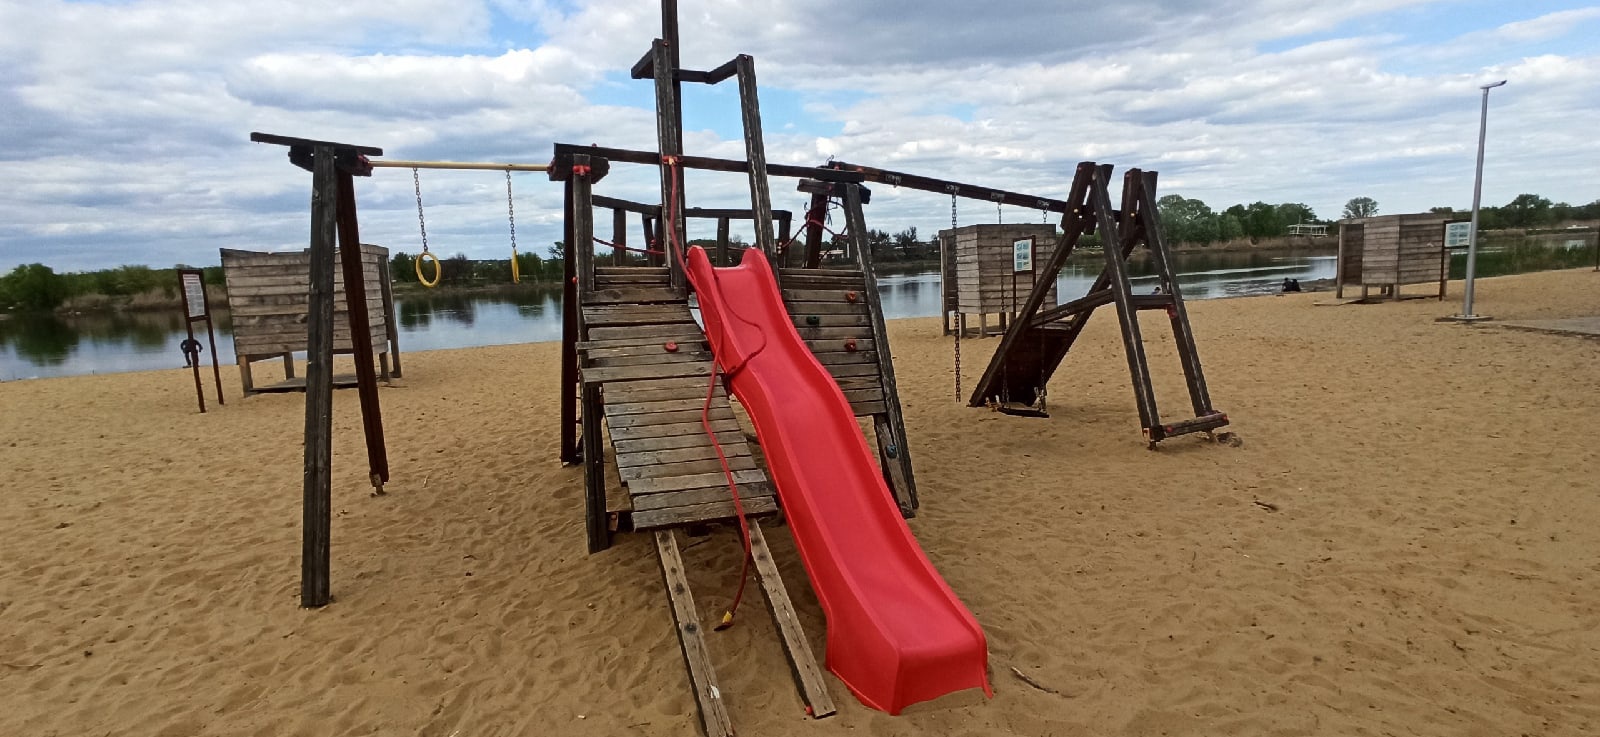 В Каменске признали неисправным детский игровой комплекс на пляже